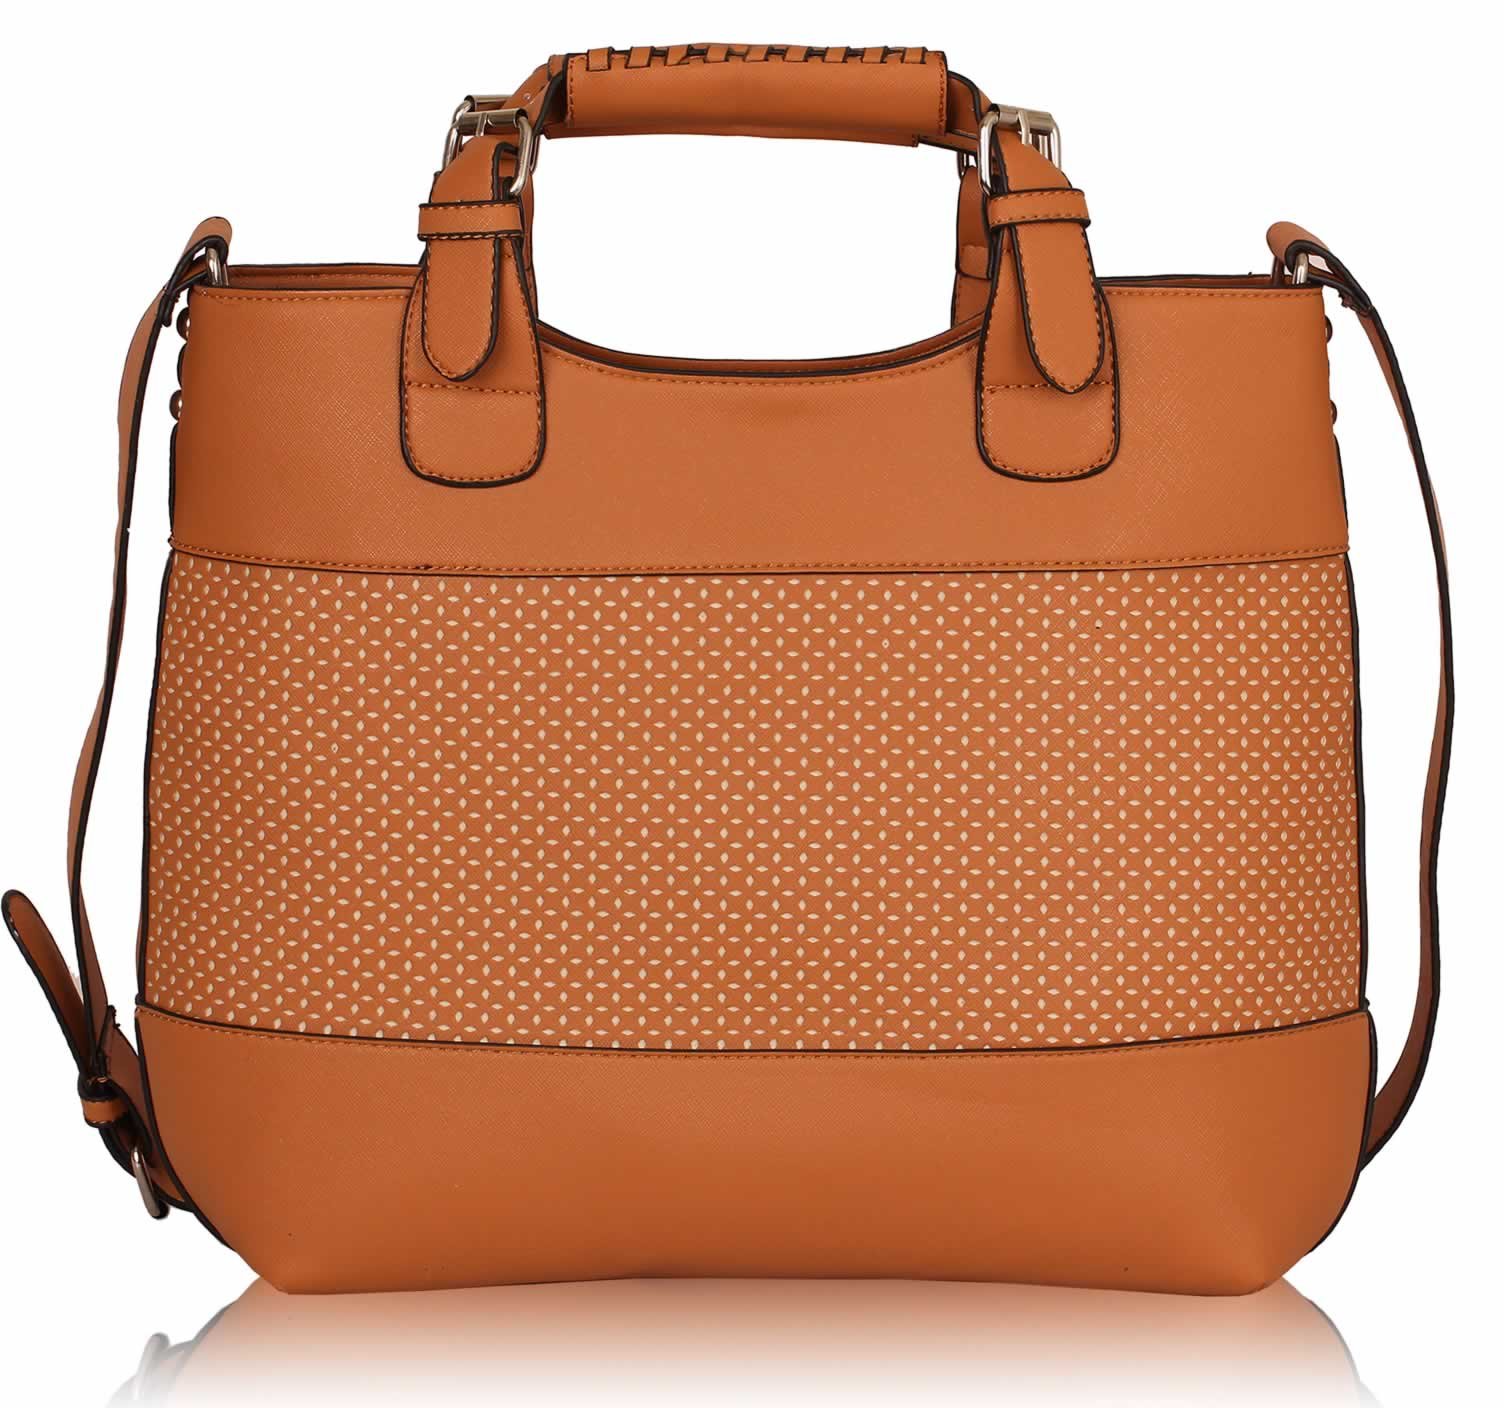 Wholesale Bags :: LS00268A - Tan Ladies Fashion Tote Handbag - Ladies handbags, clutch bags and ...